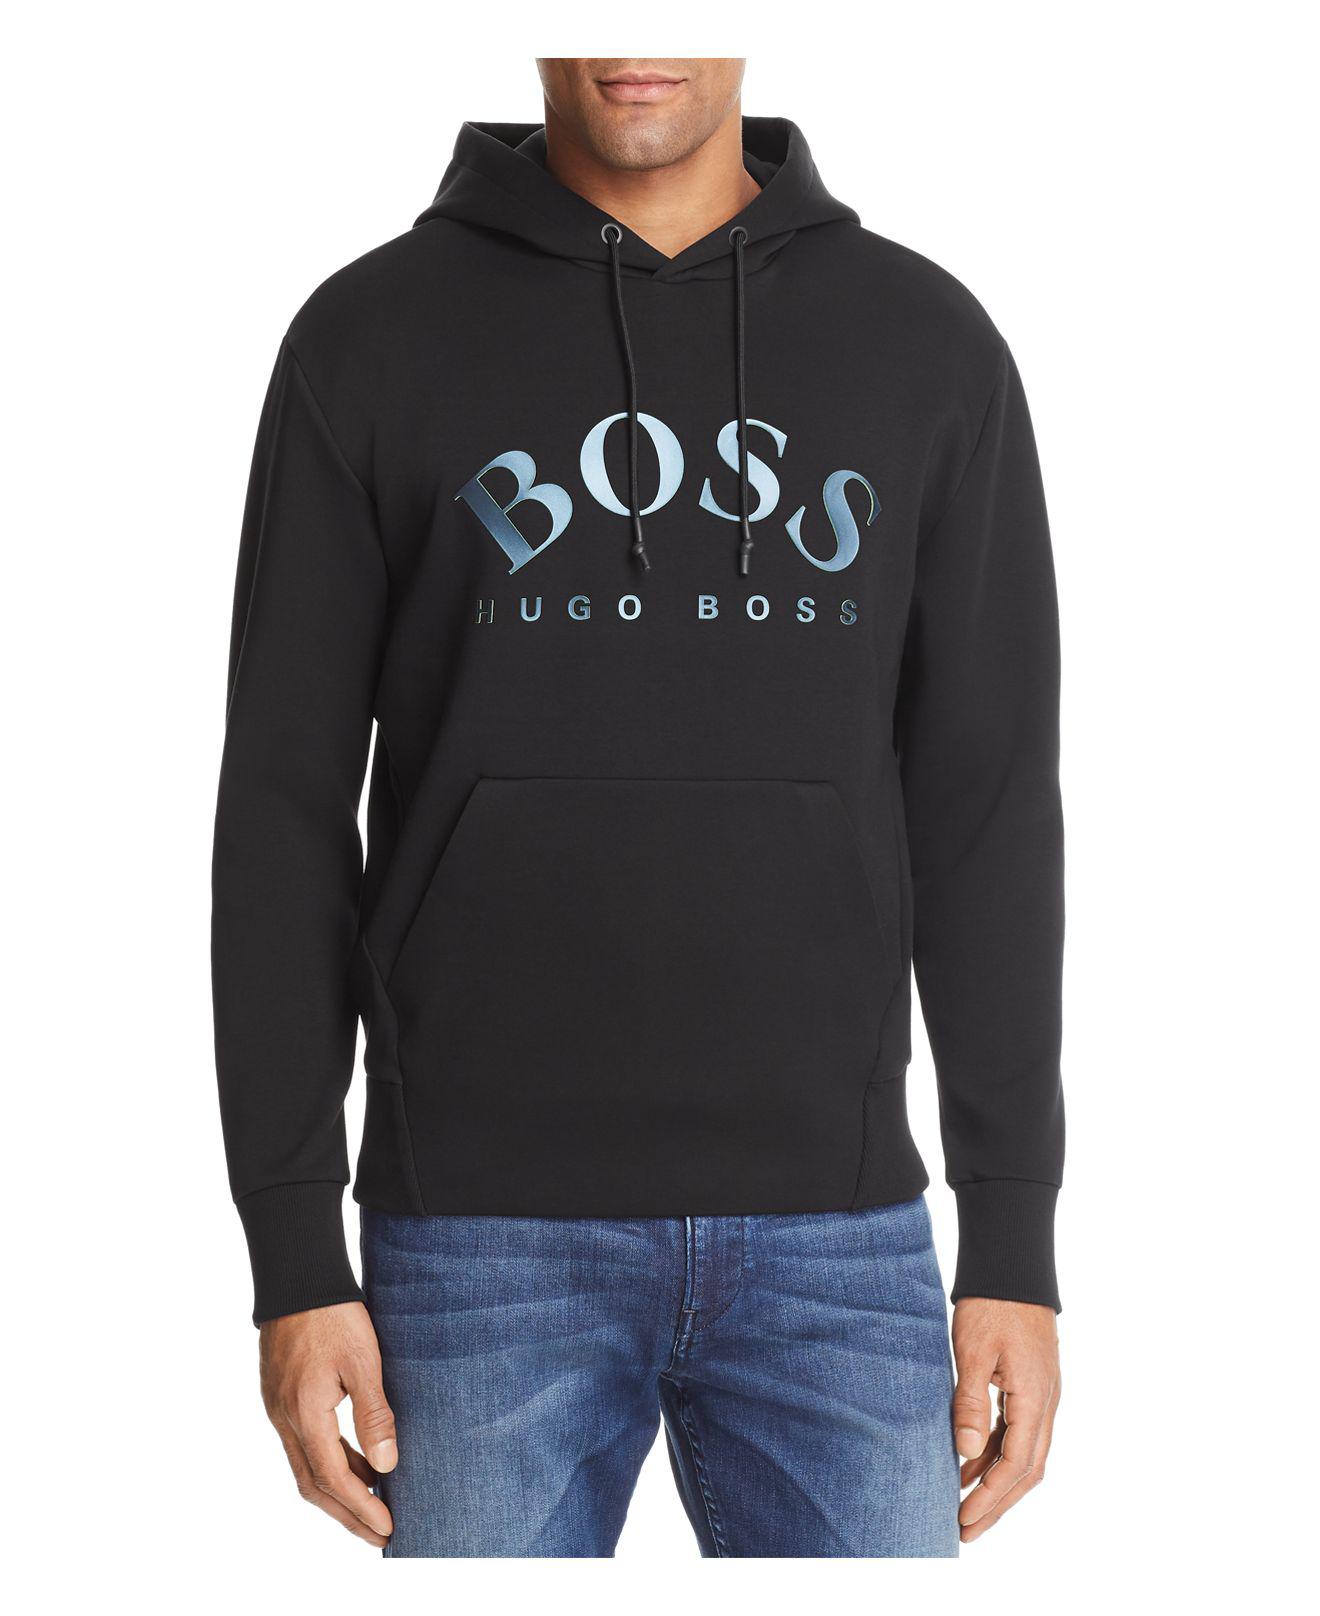 mens boss hoodie